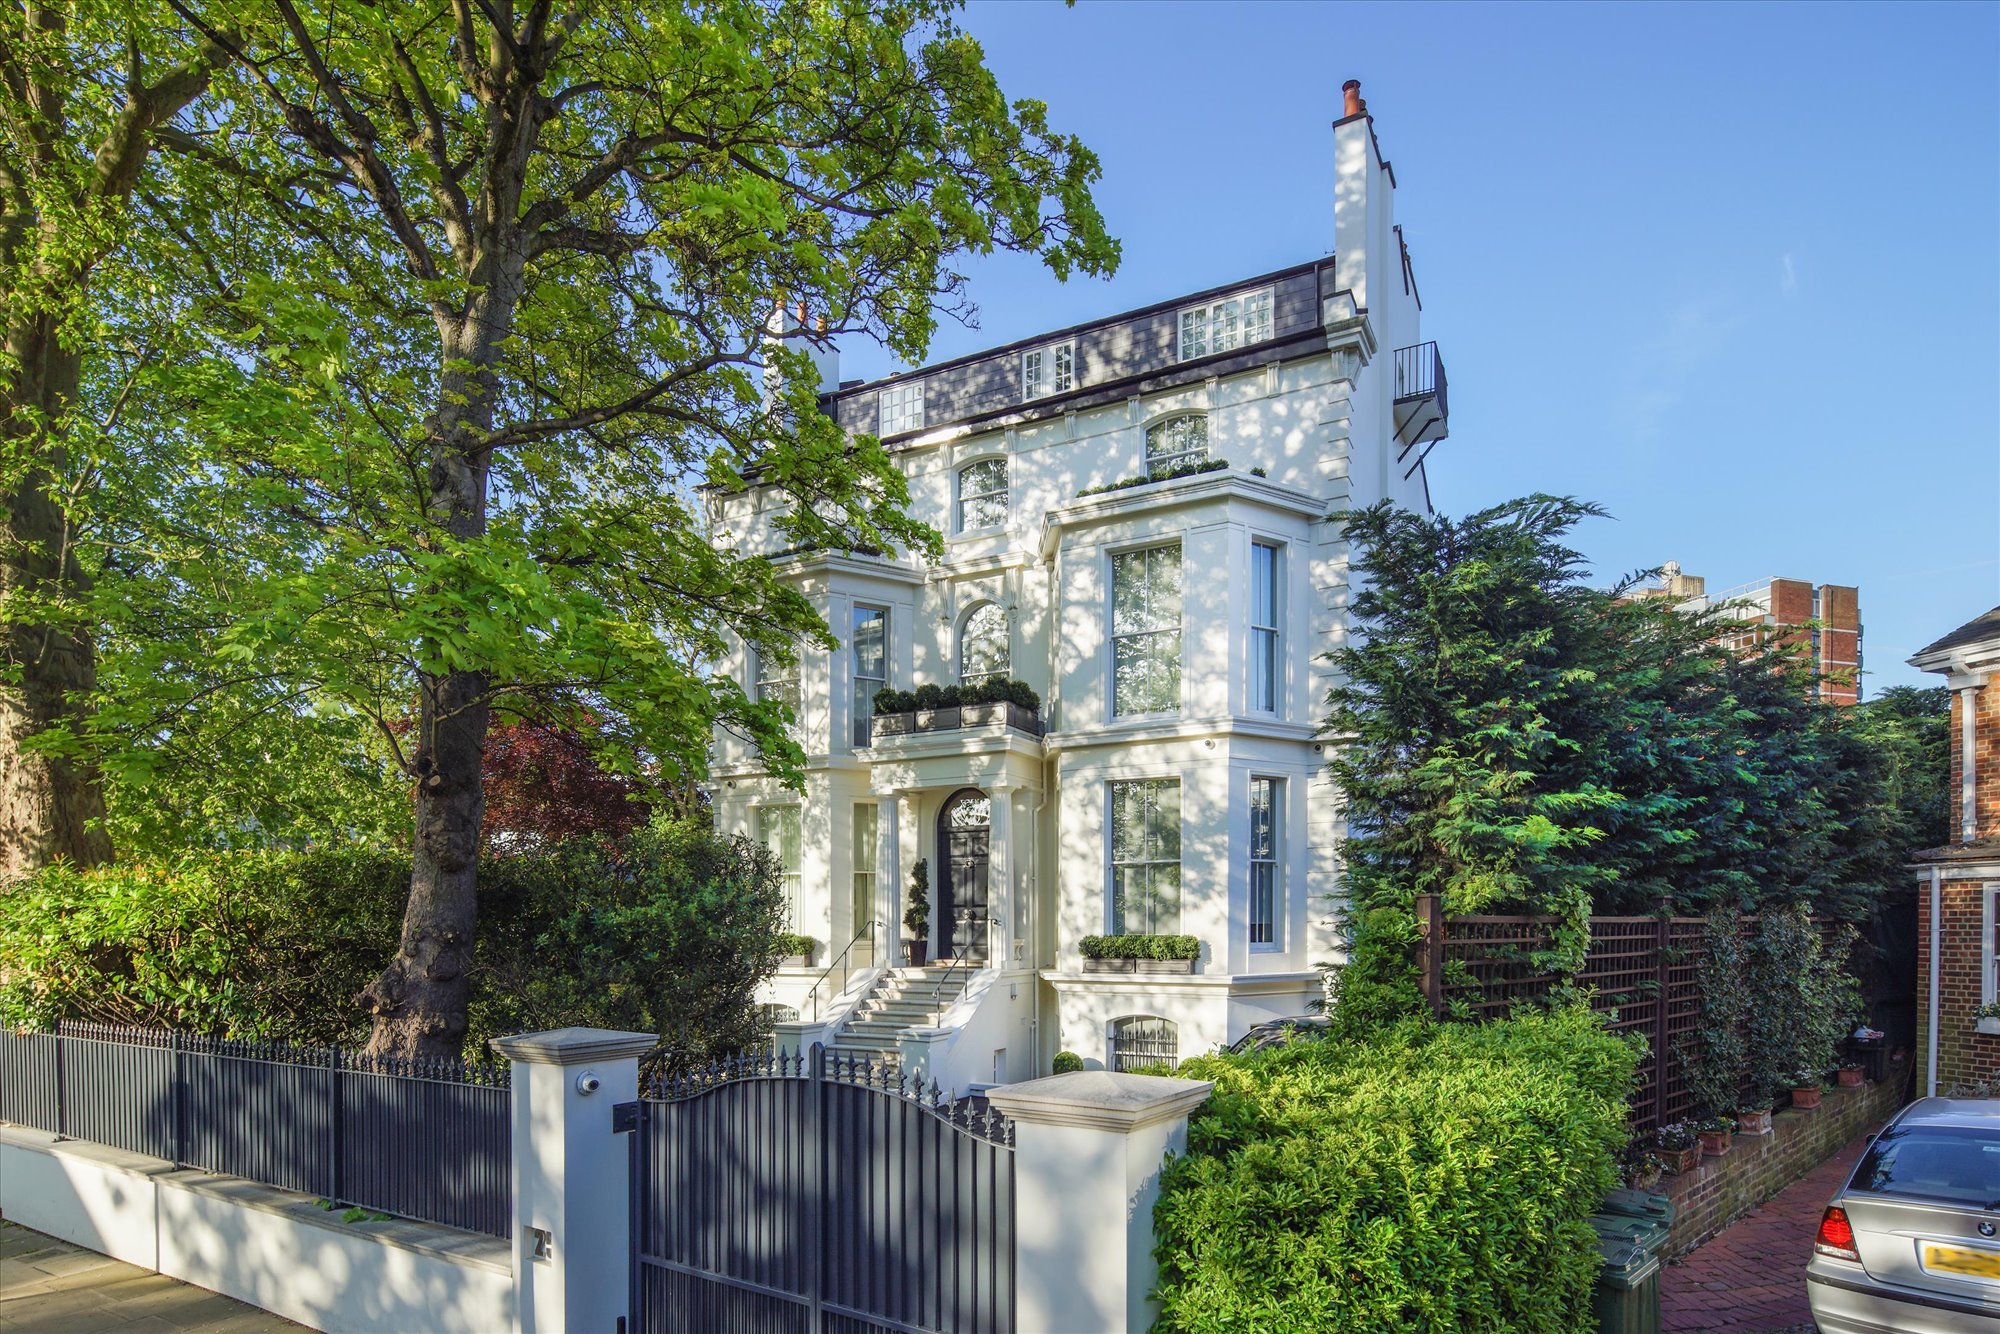 Casa blanca de estilo victoriano de Rihana en Londres